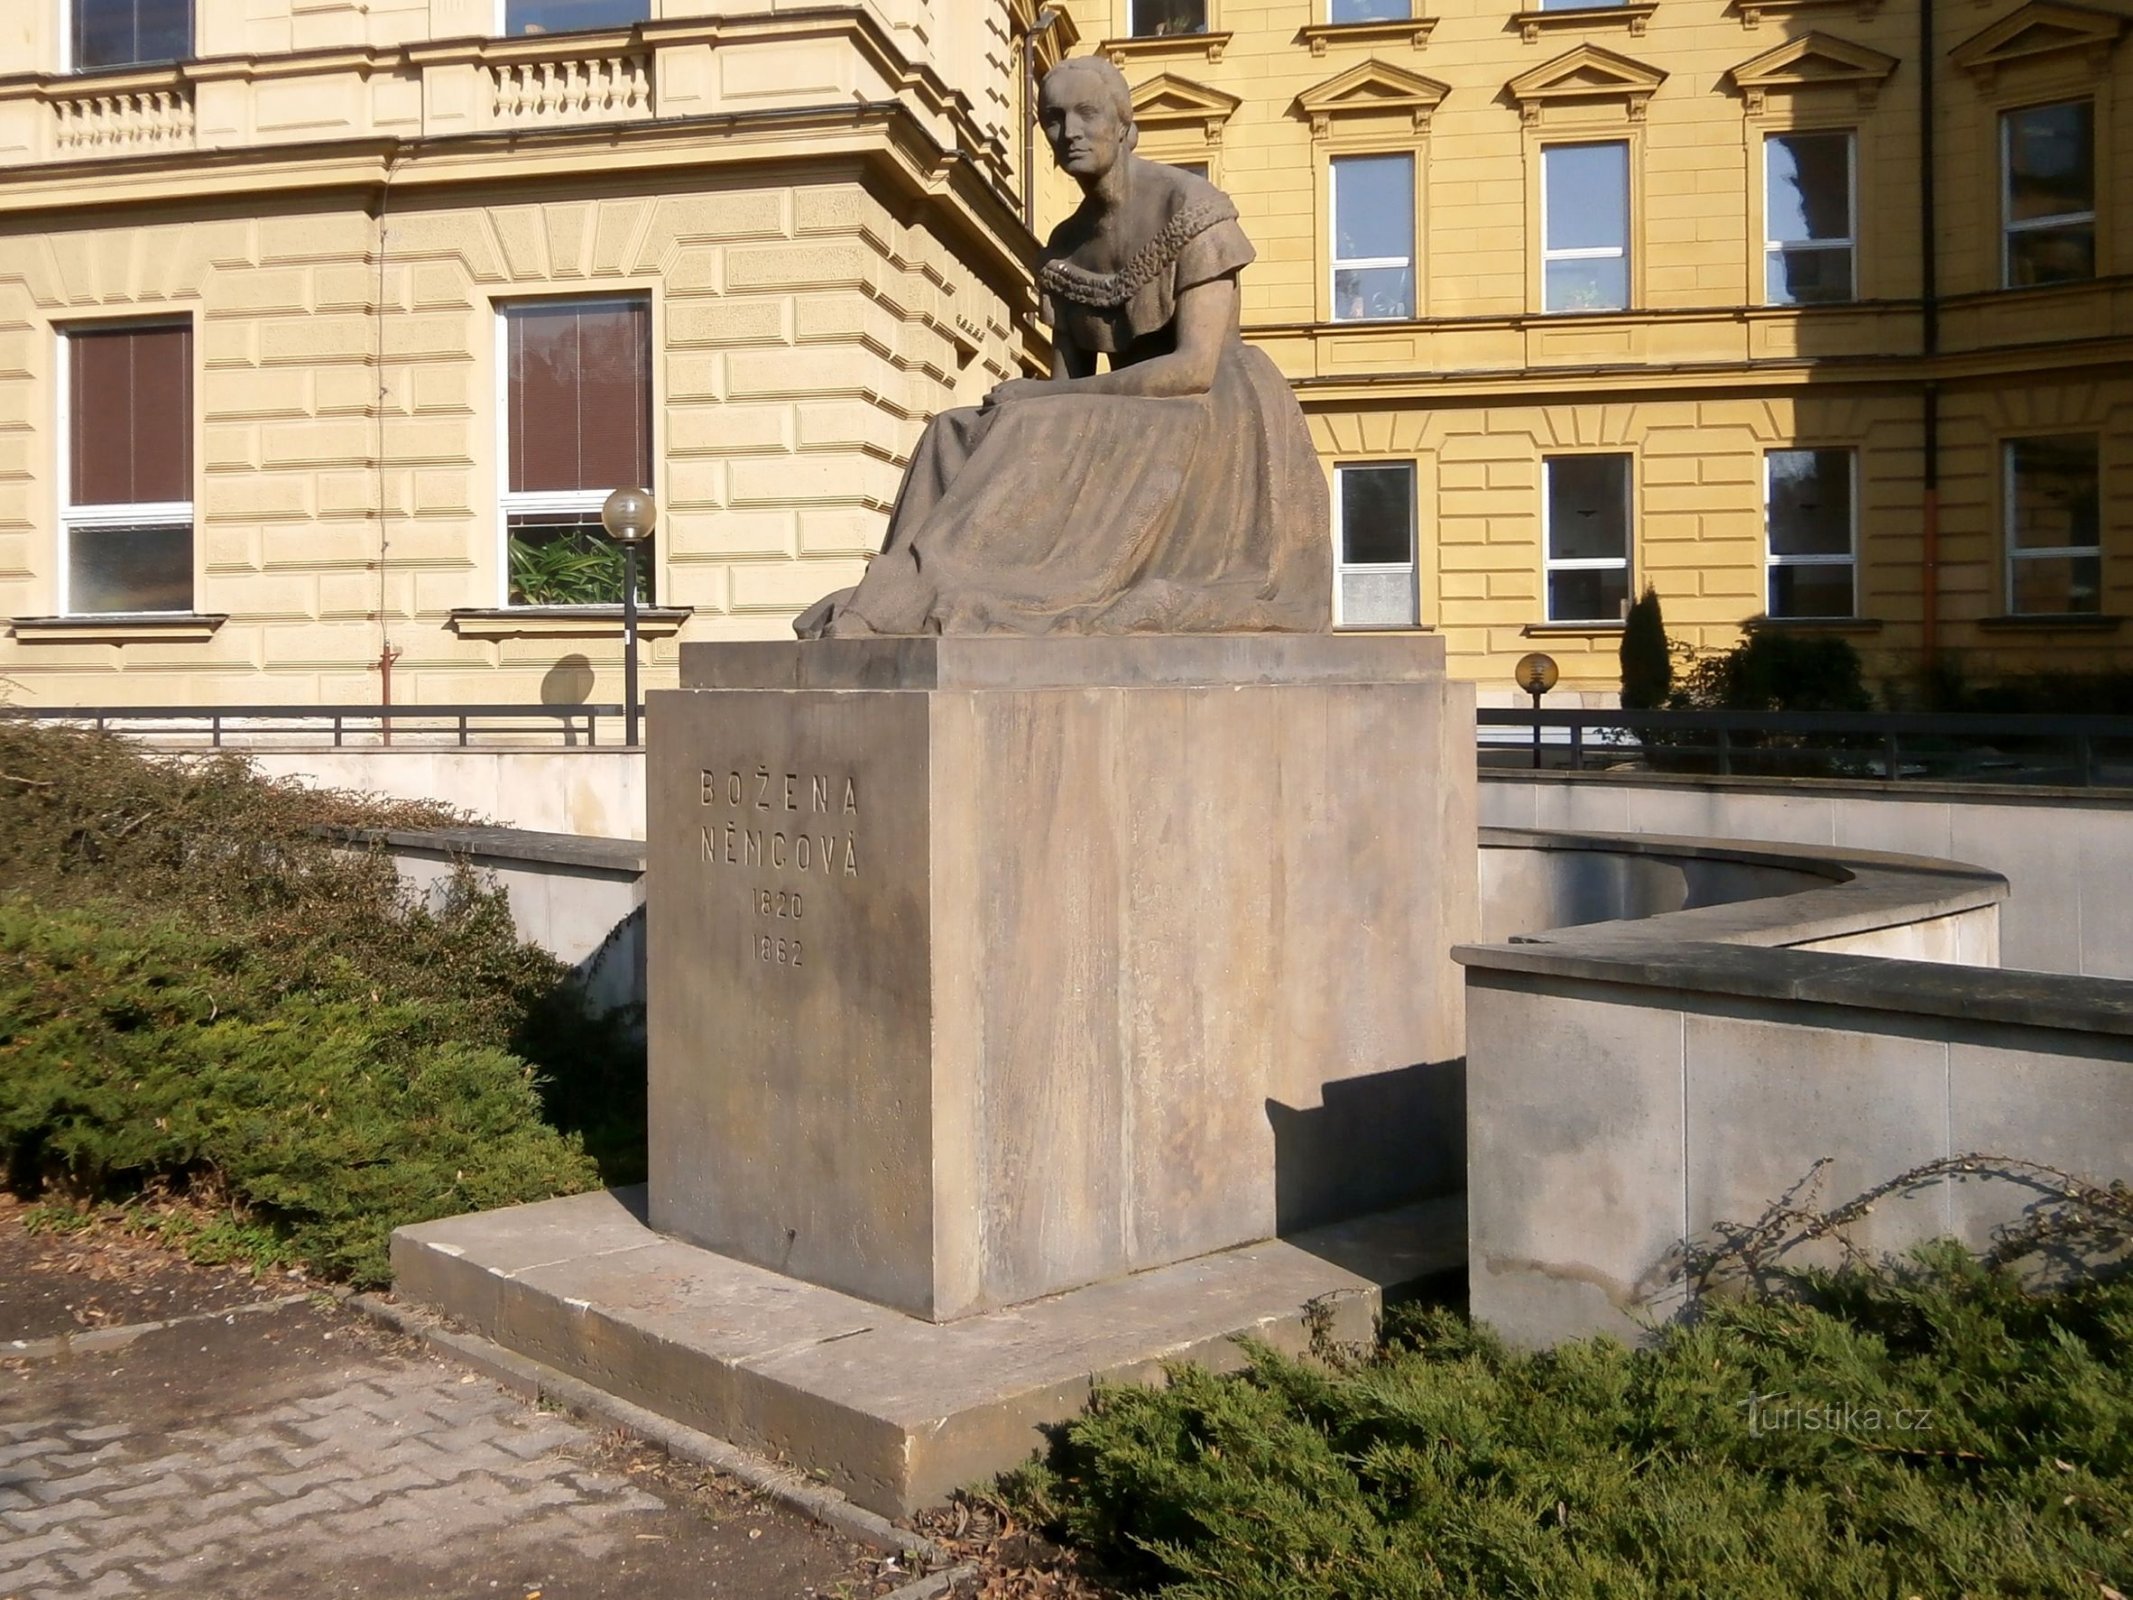 Spomenik Boženi Němcová (Hradec Králové, 26.3.2014. lipnja XNUMX.)